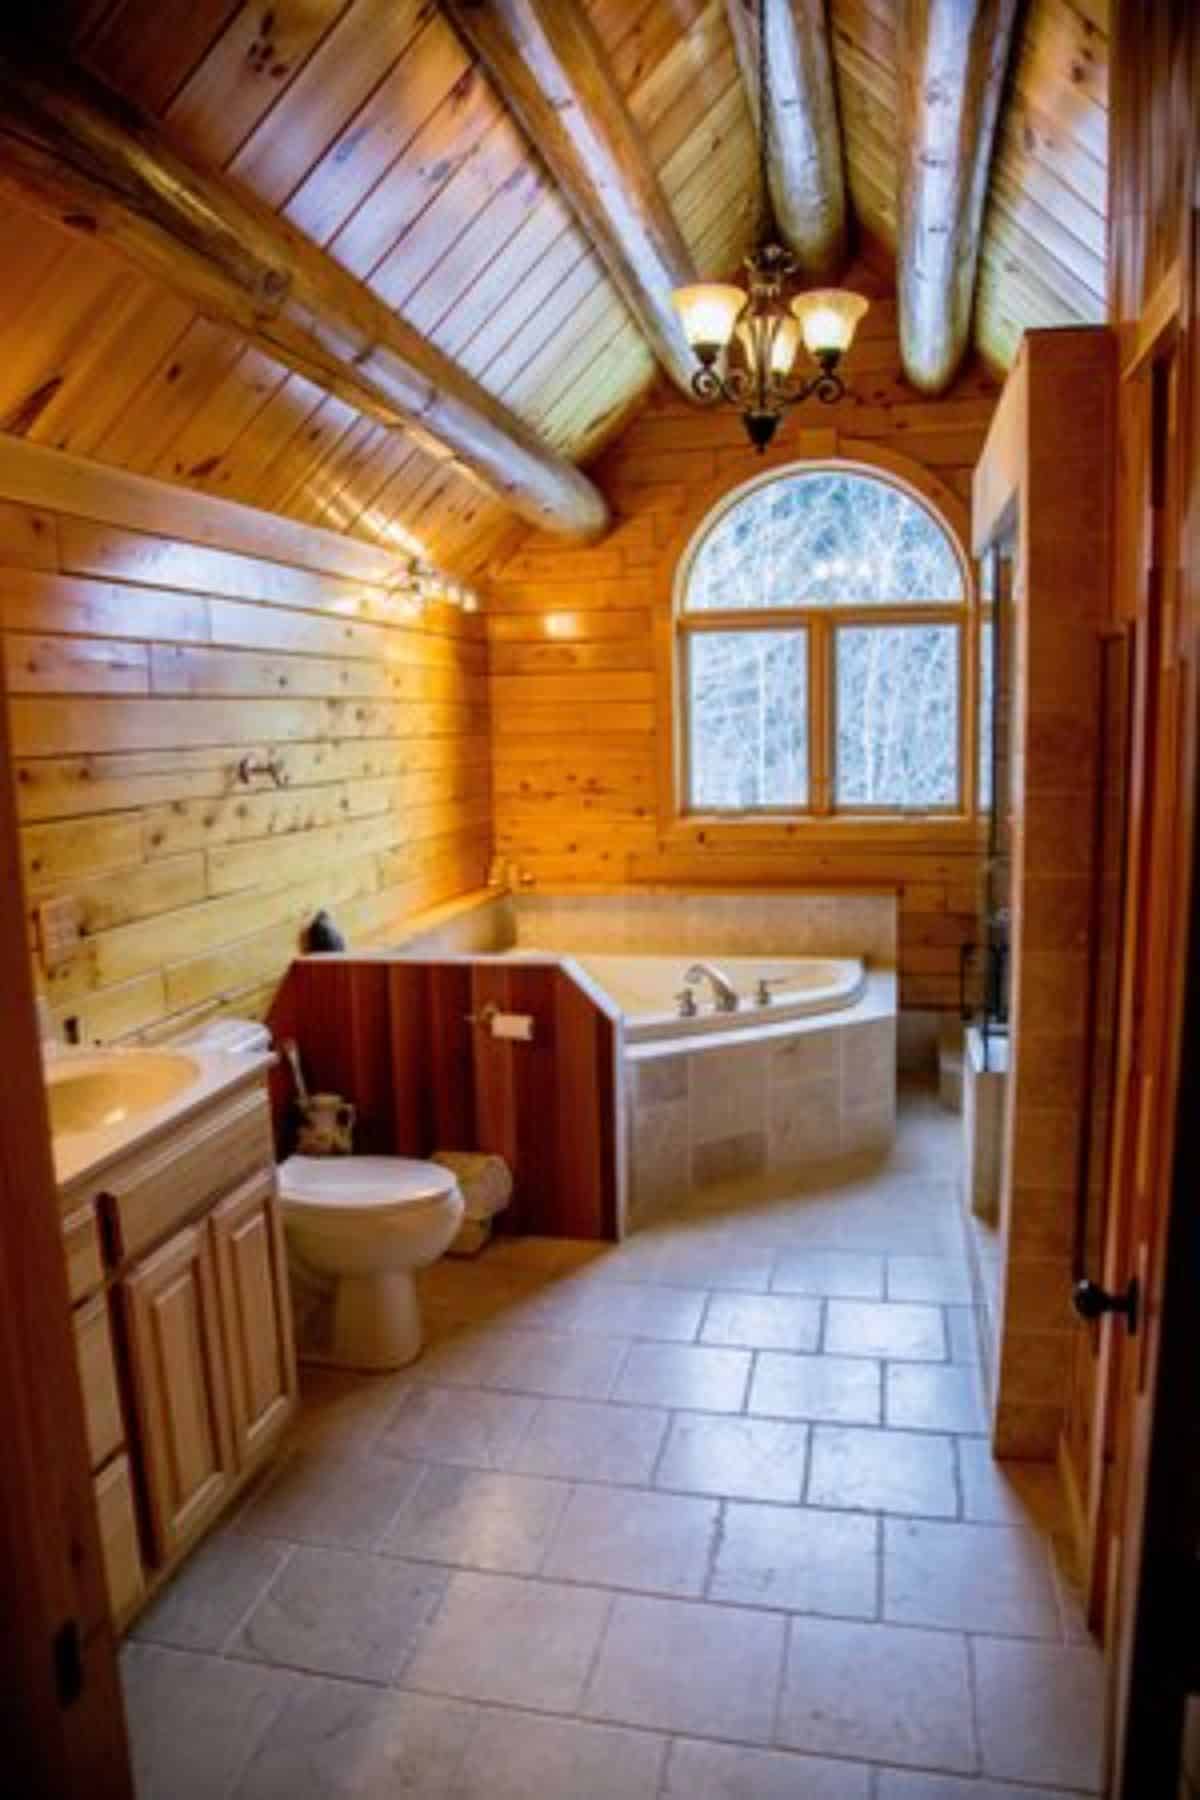 bathtub against wall by windows in bathroom